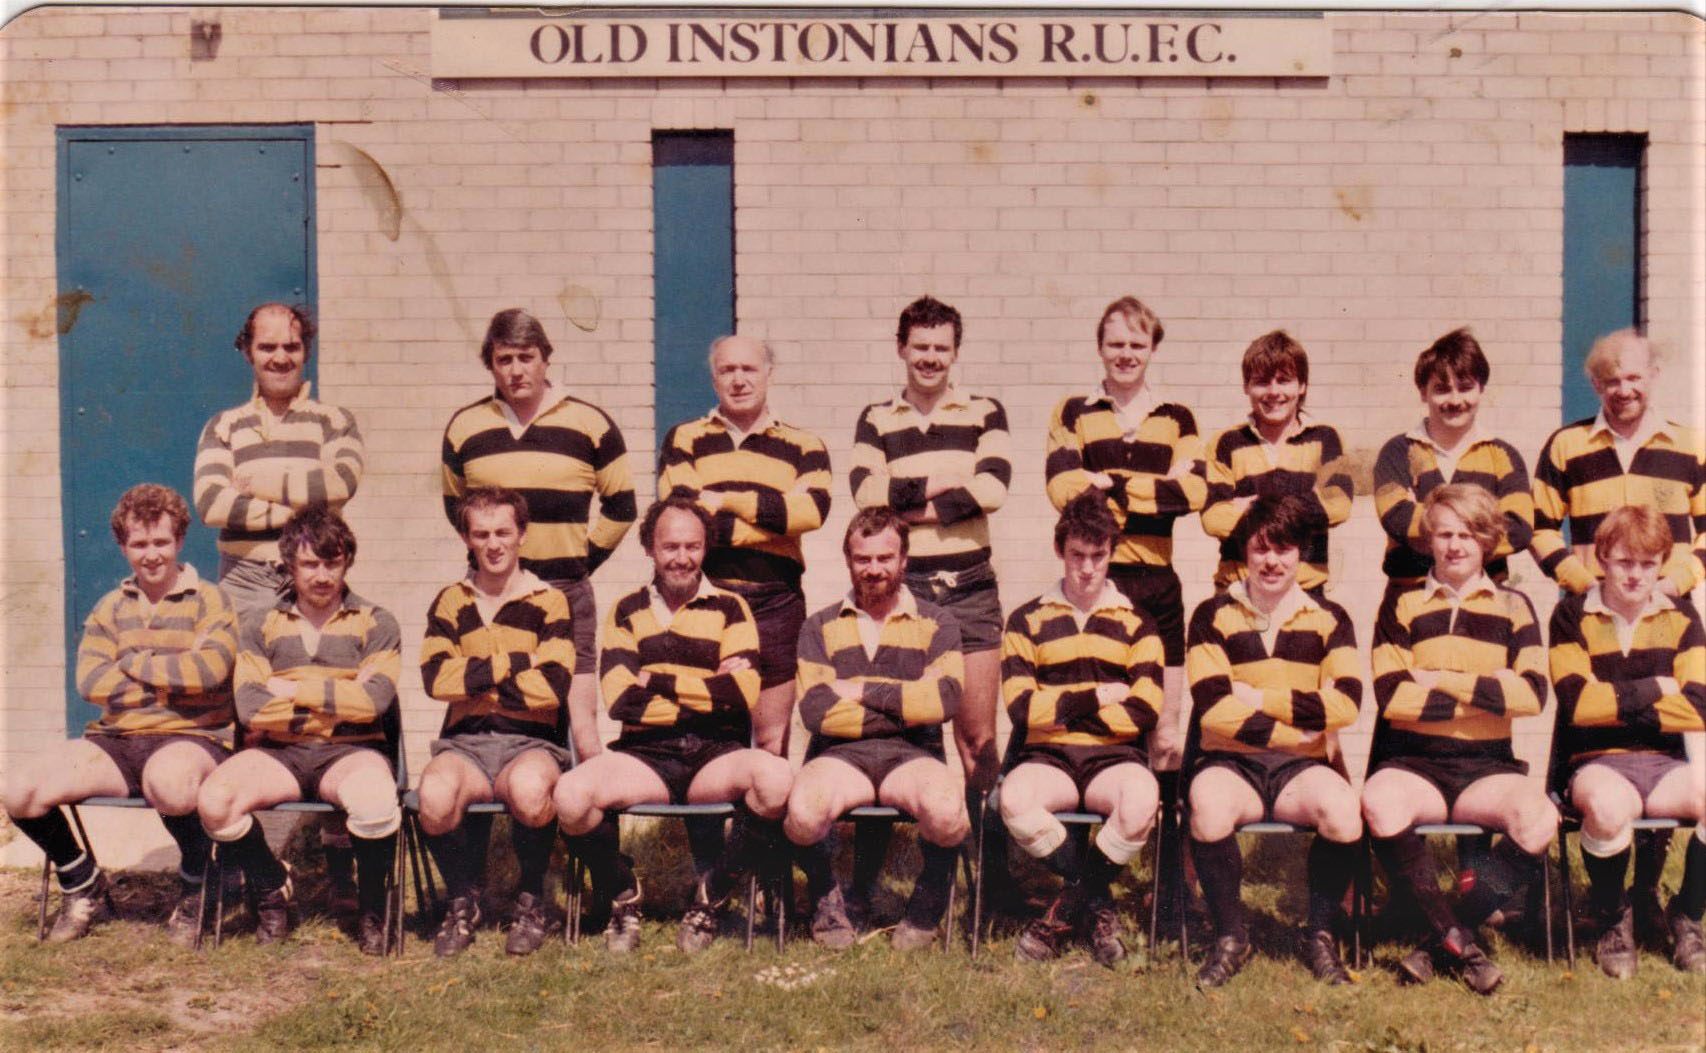 Unknown Team 1980's